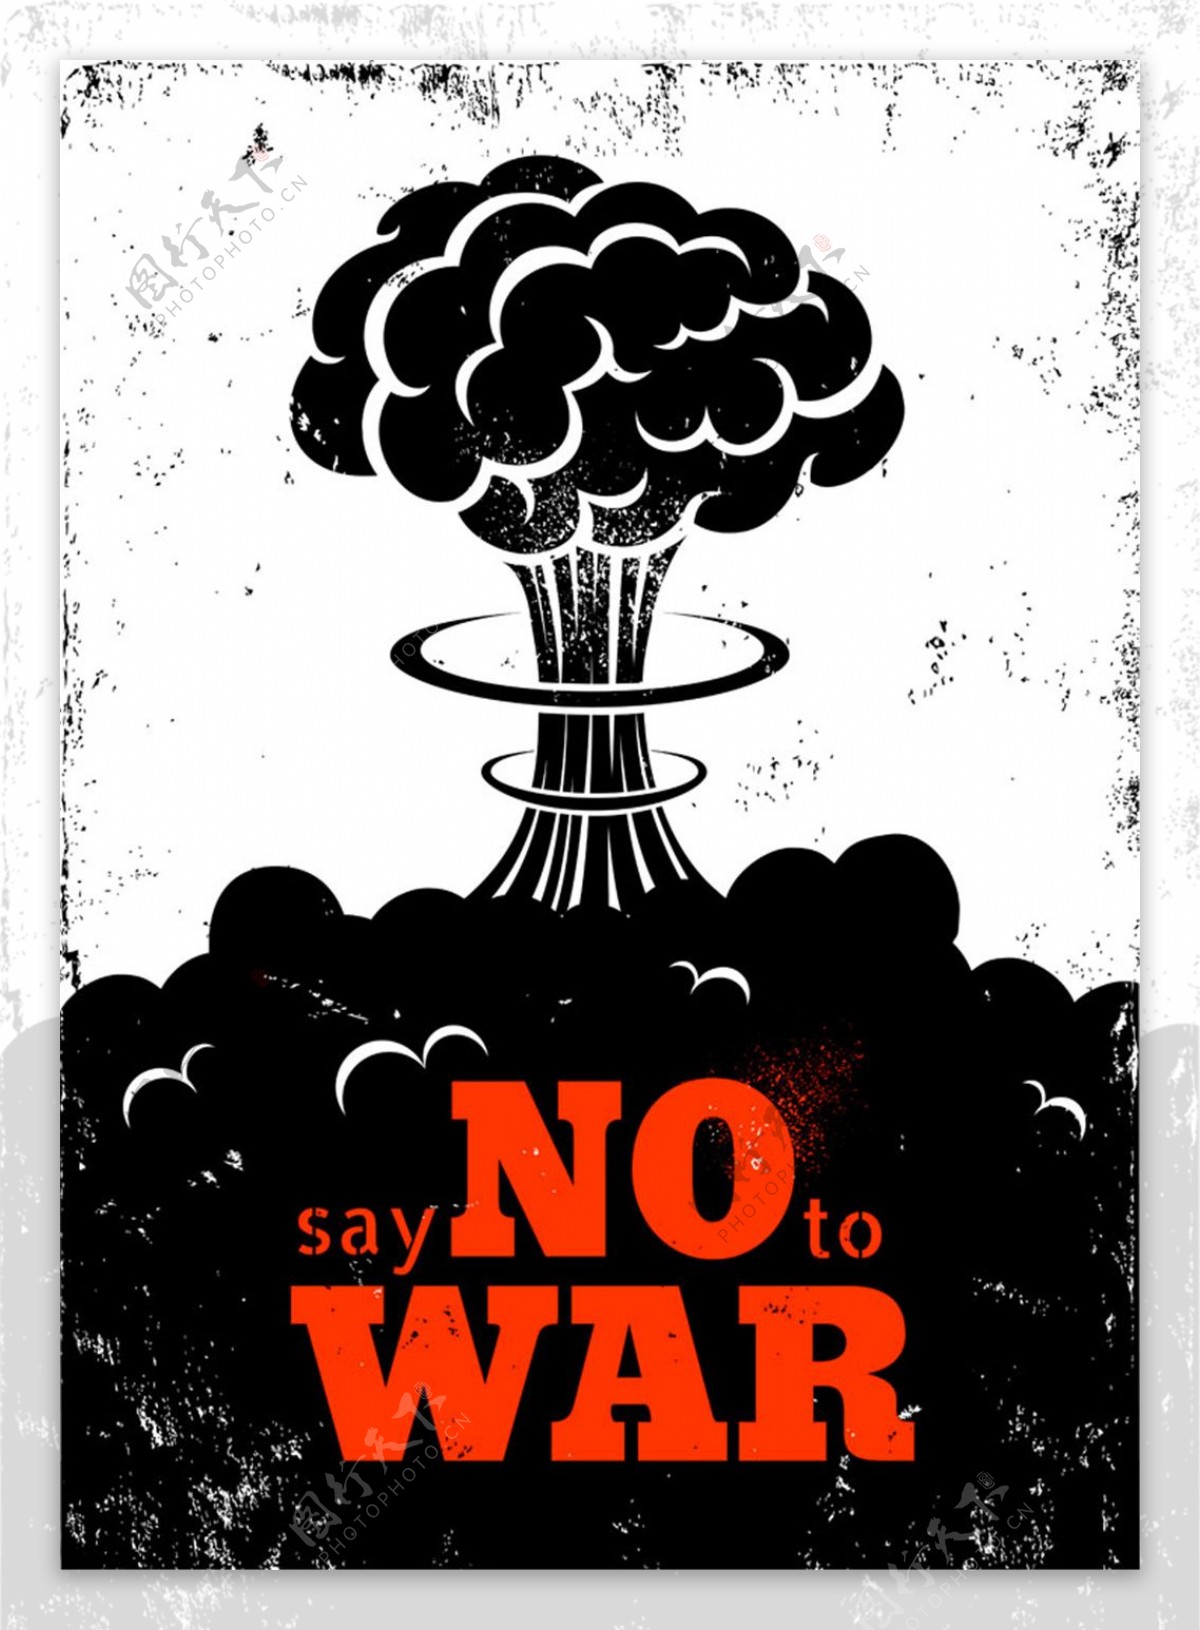 反对战争标语图片